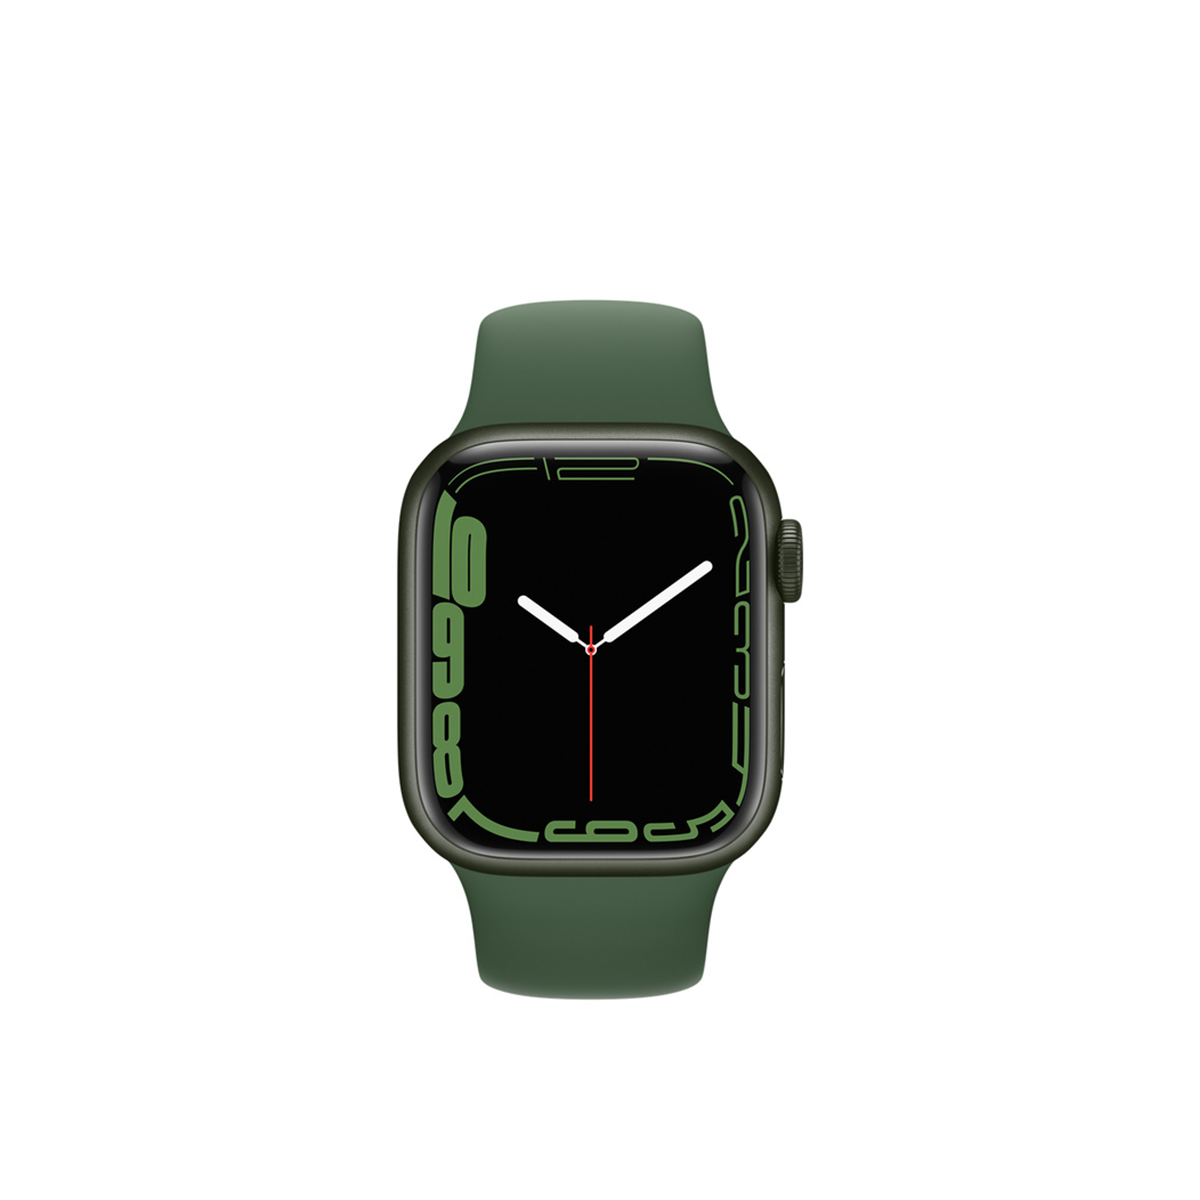  Apple Watch Series 7 GPS + Cellular, Green Aluminium Case with Clover Sport Band - Regular 